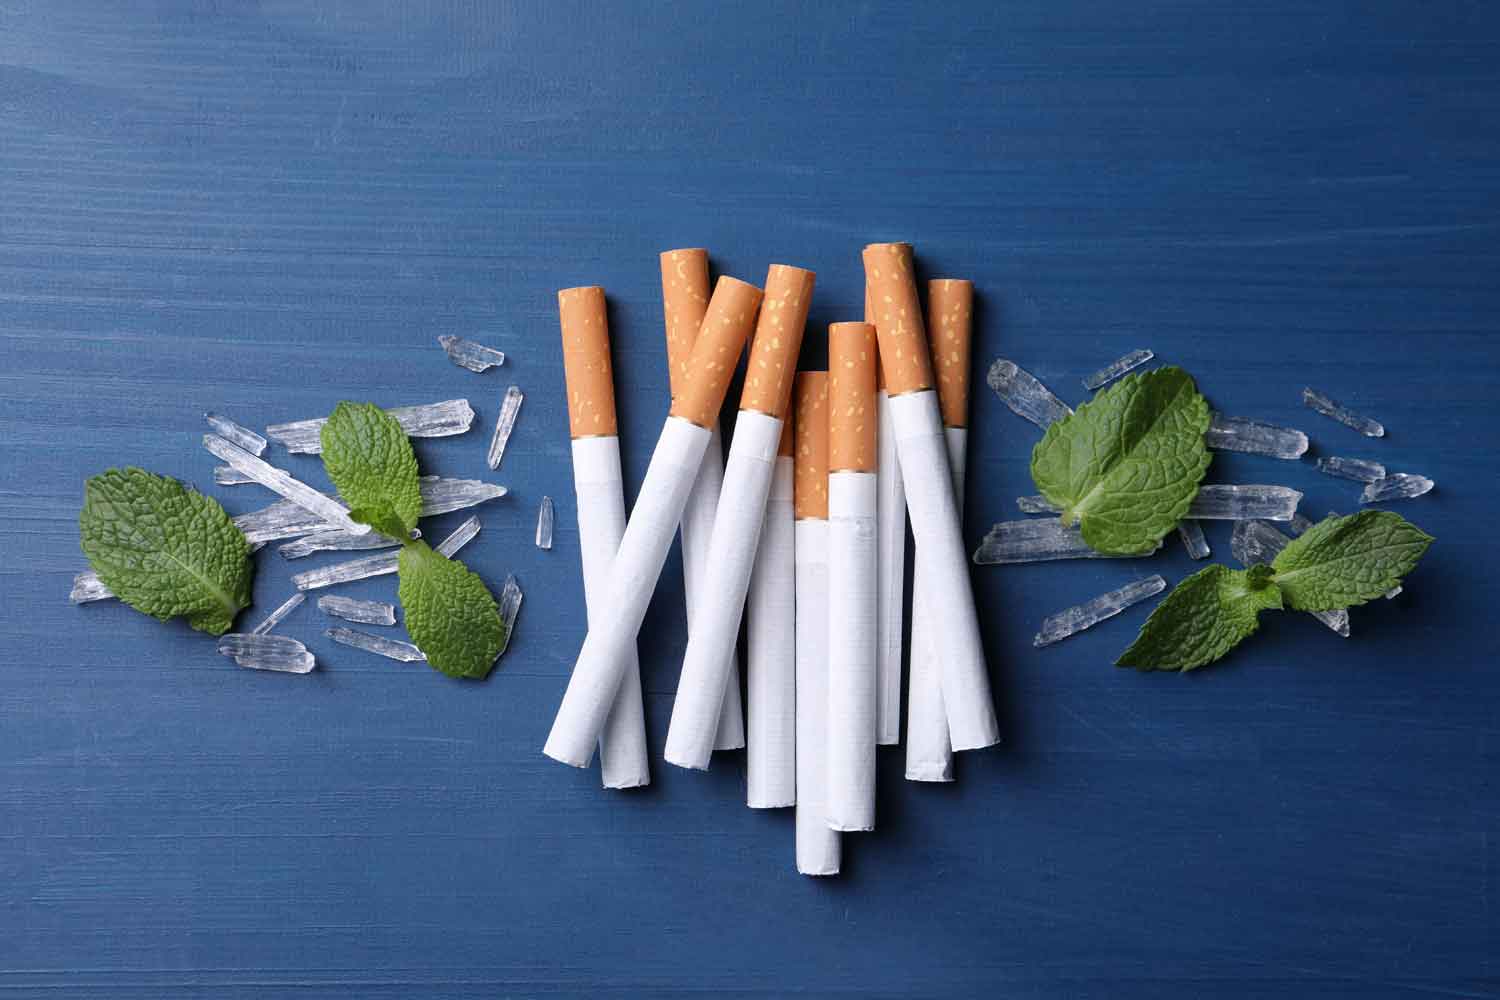 cigarette ads 2022